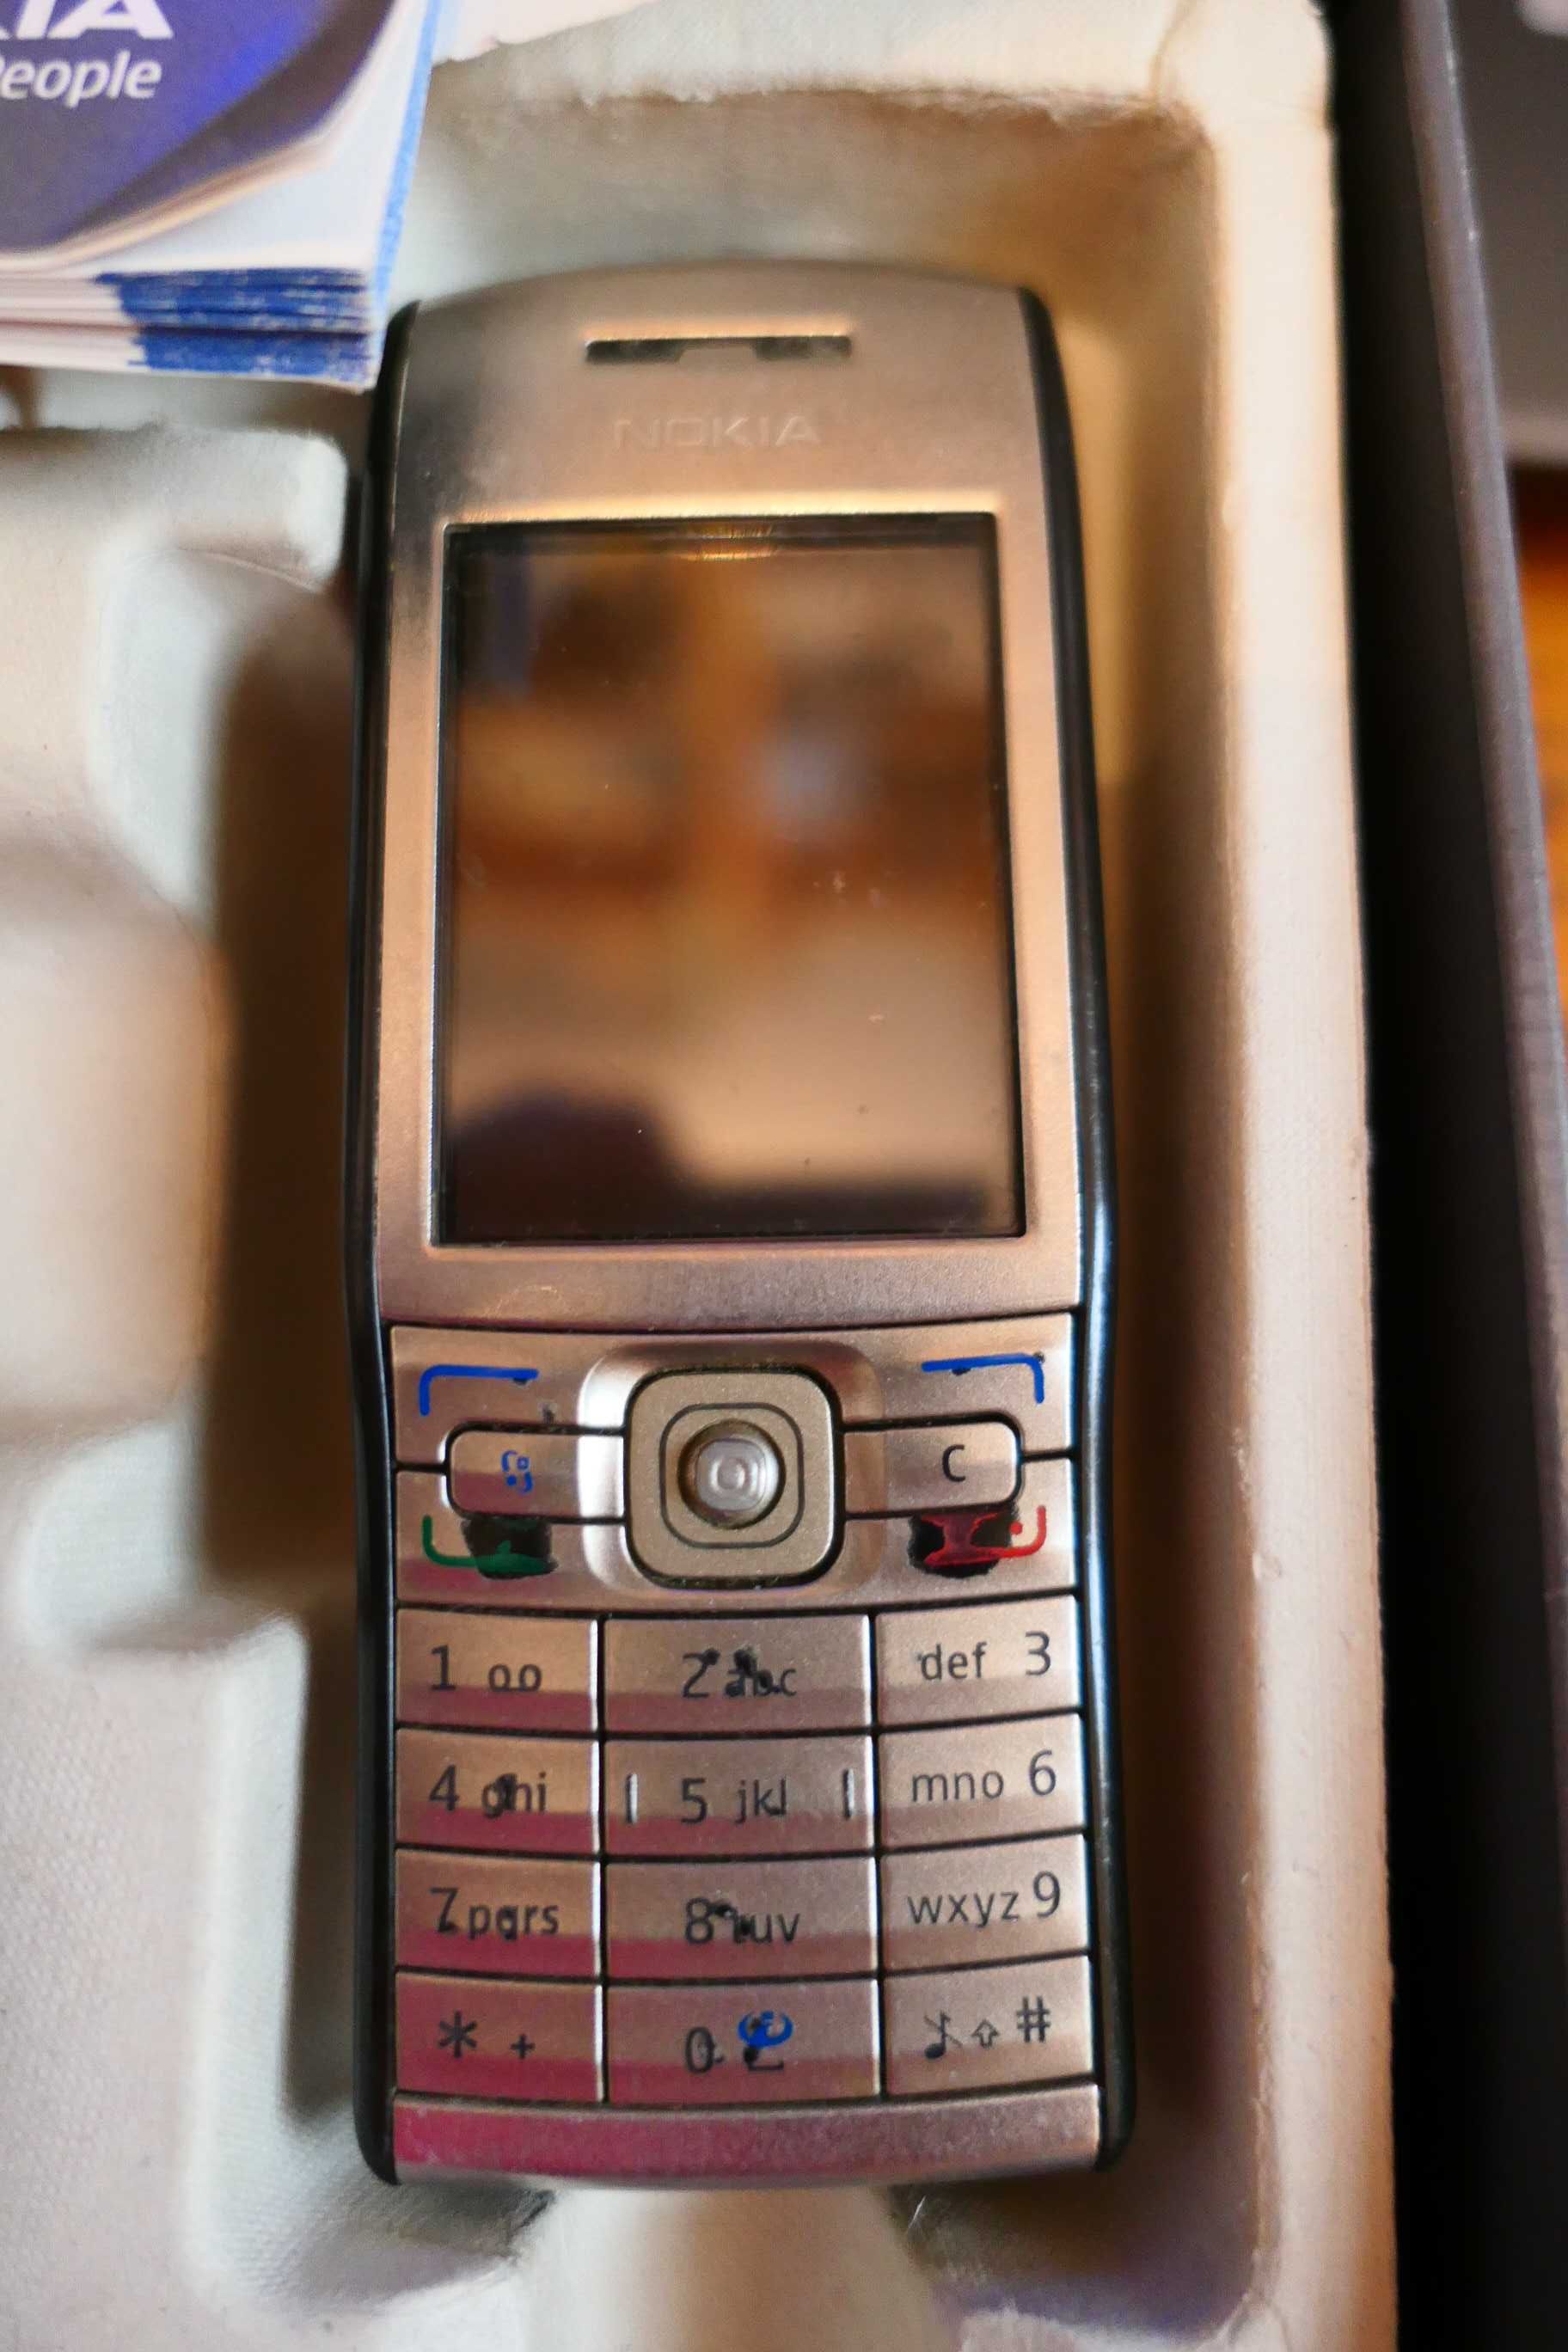 Nokia E50 La Cutie cu Camera Manuale Factura si Garantia din 2008